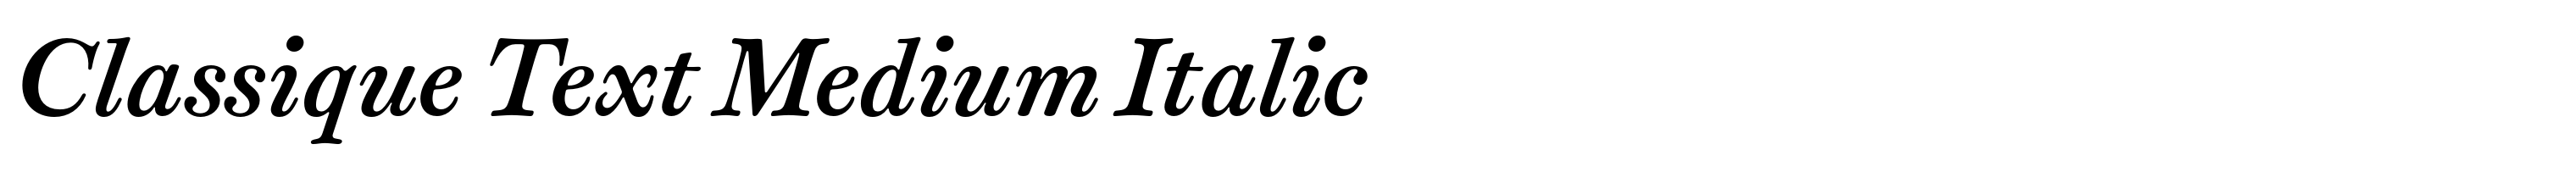 Classique Text Medium Italic